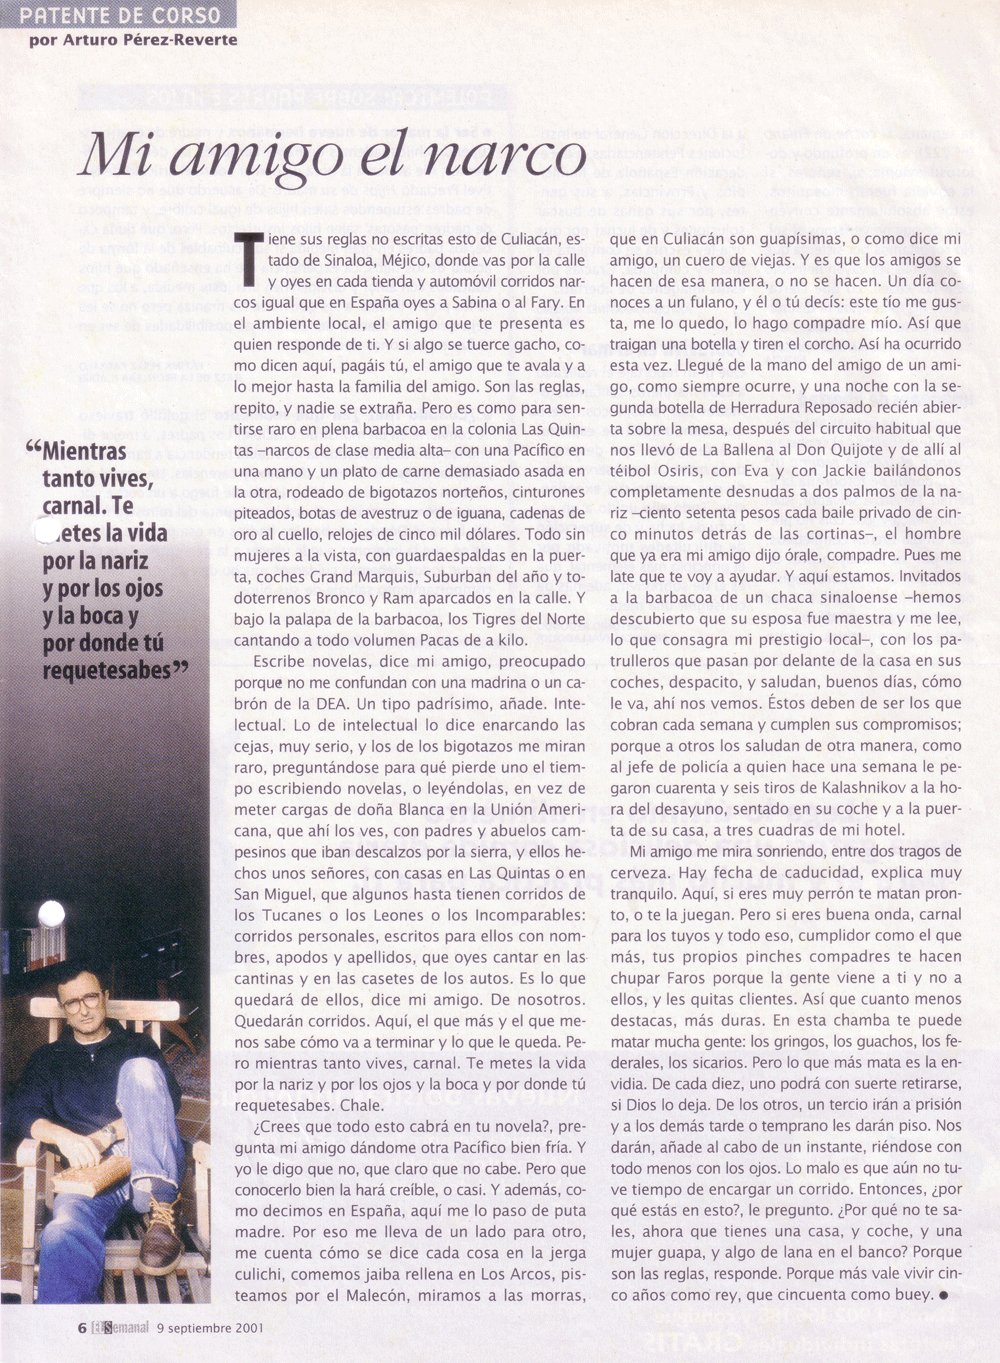 "Mi amigo el narco" El Semanal, 9 de septiembre de 2001